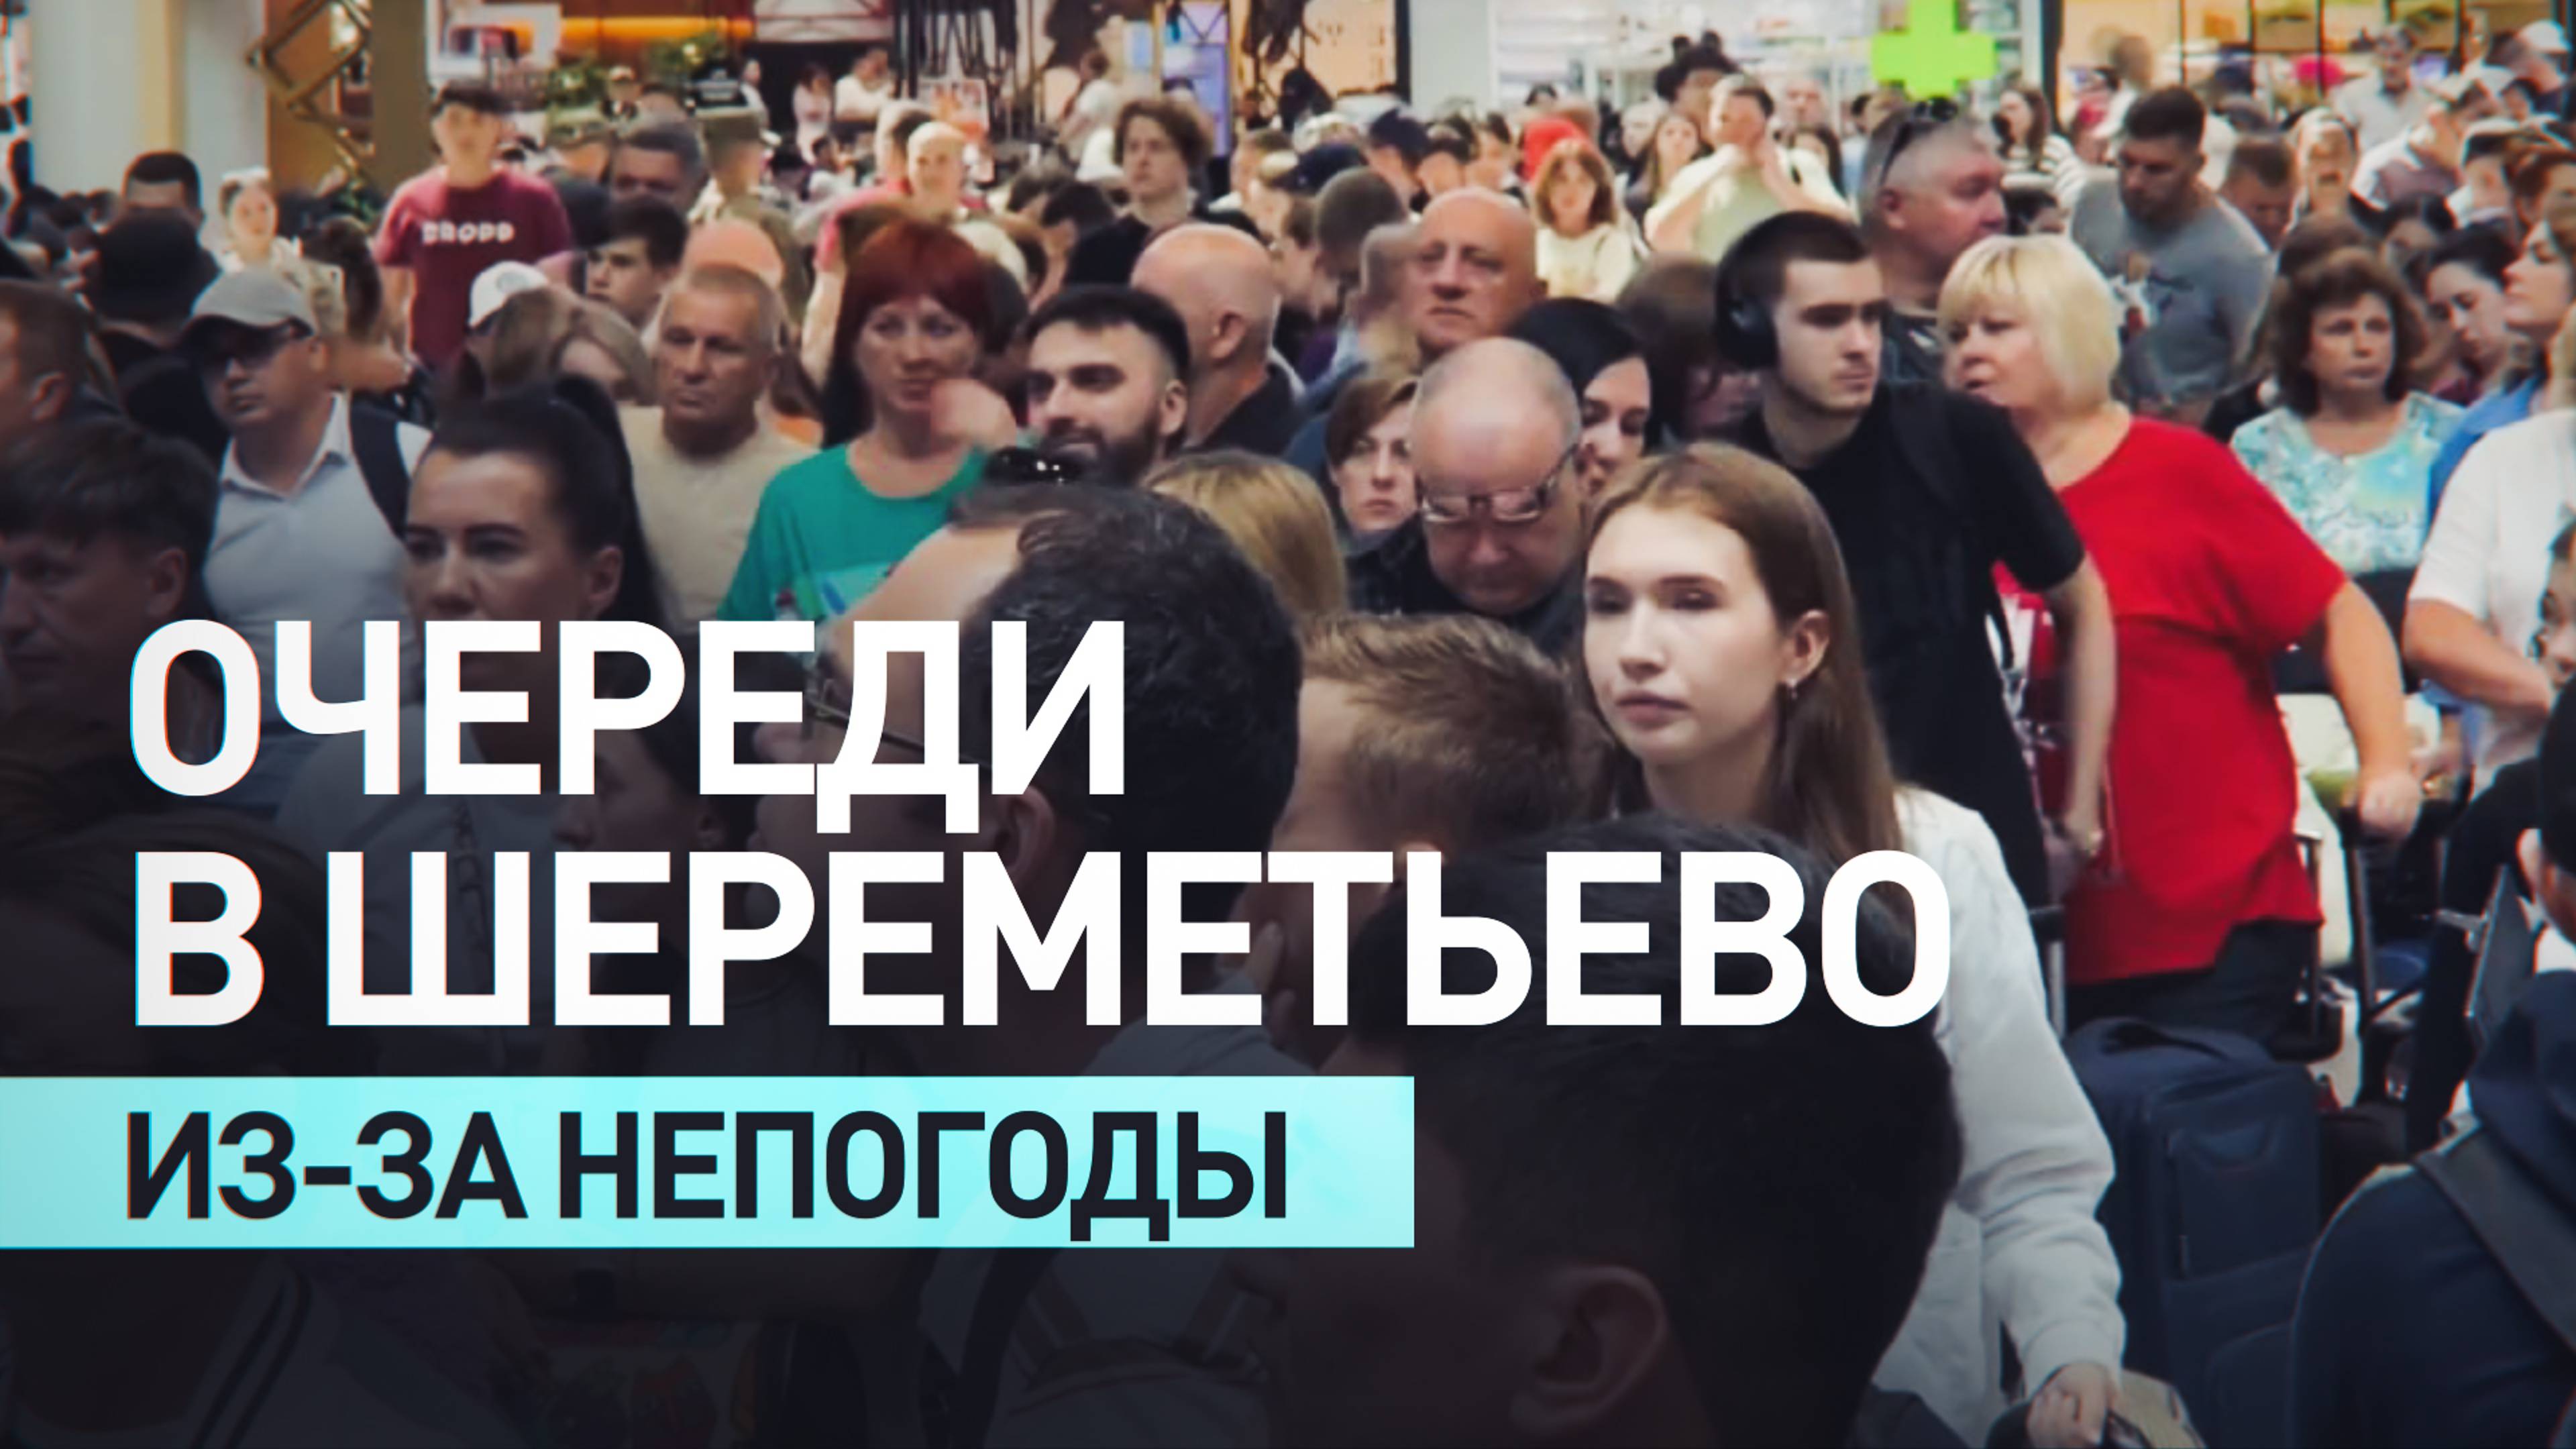 «Стоять ещё минимум час до стойки регистрации»: пассажиры об очередях в Шереметьево